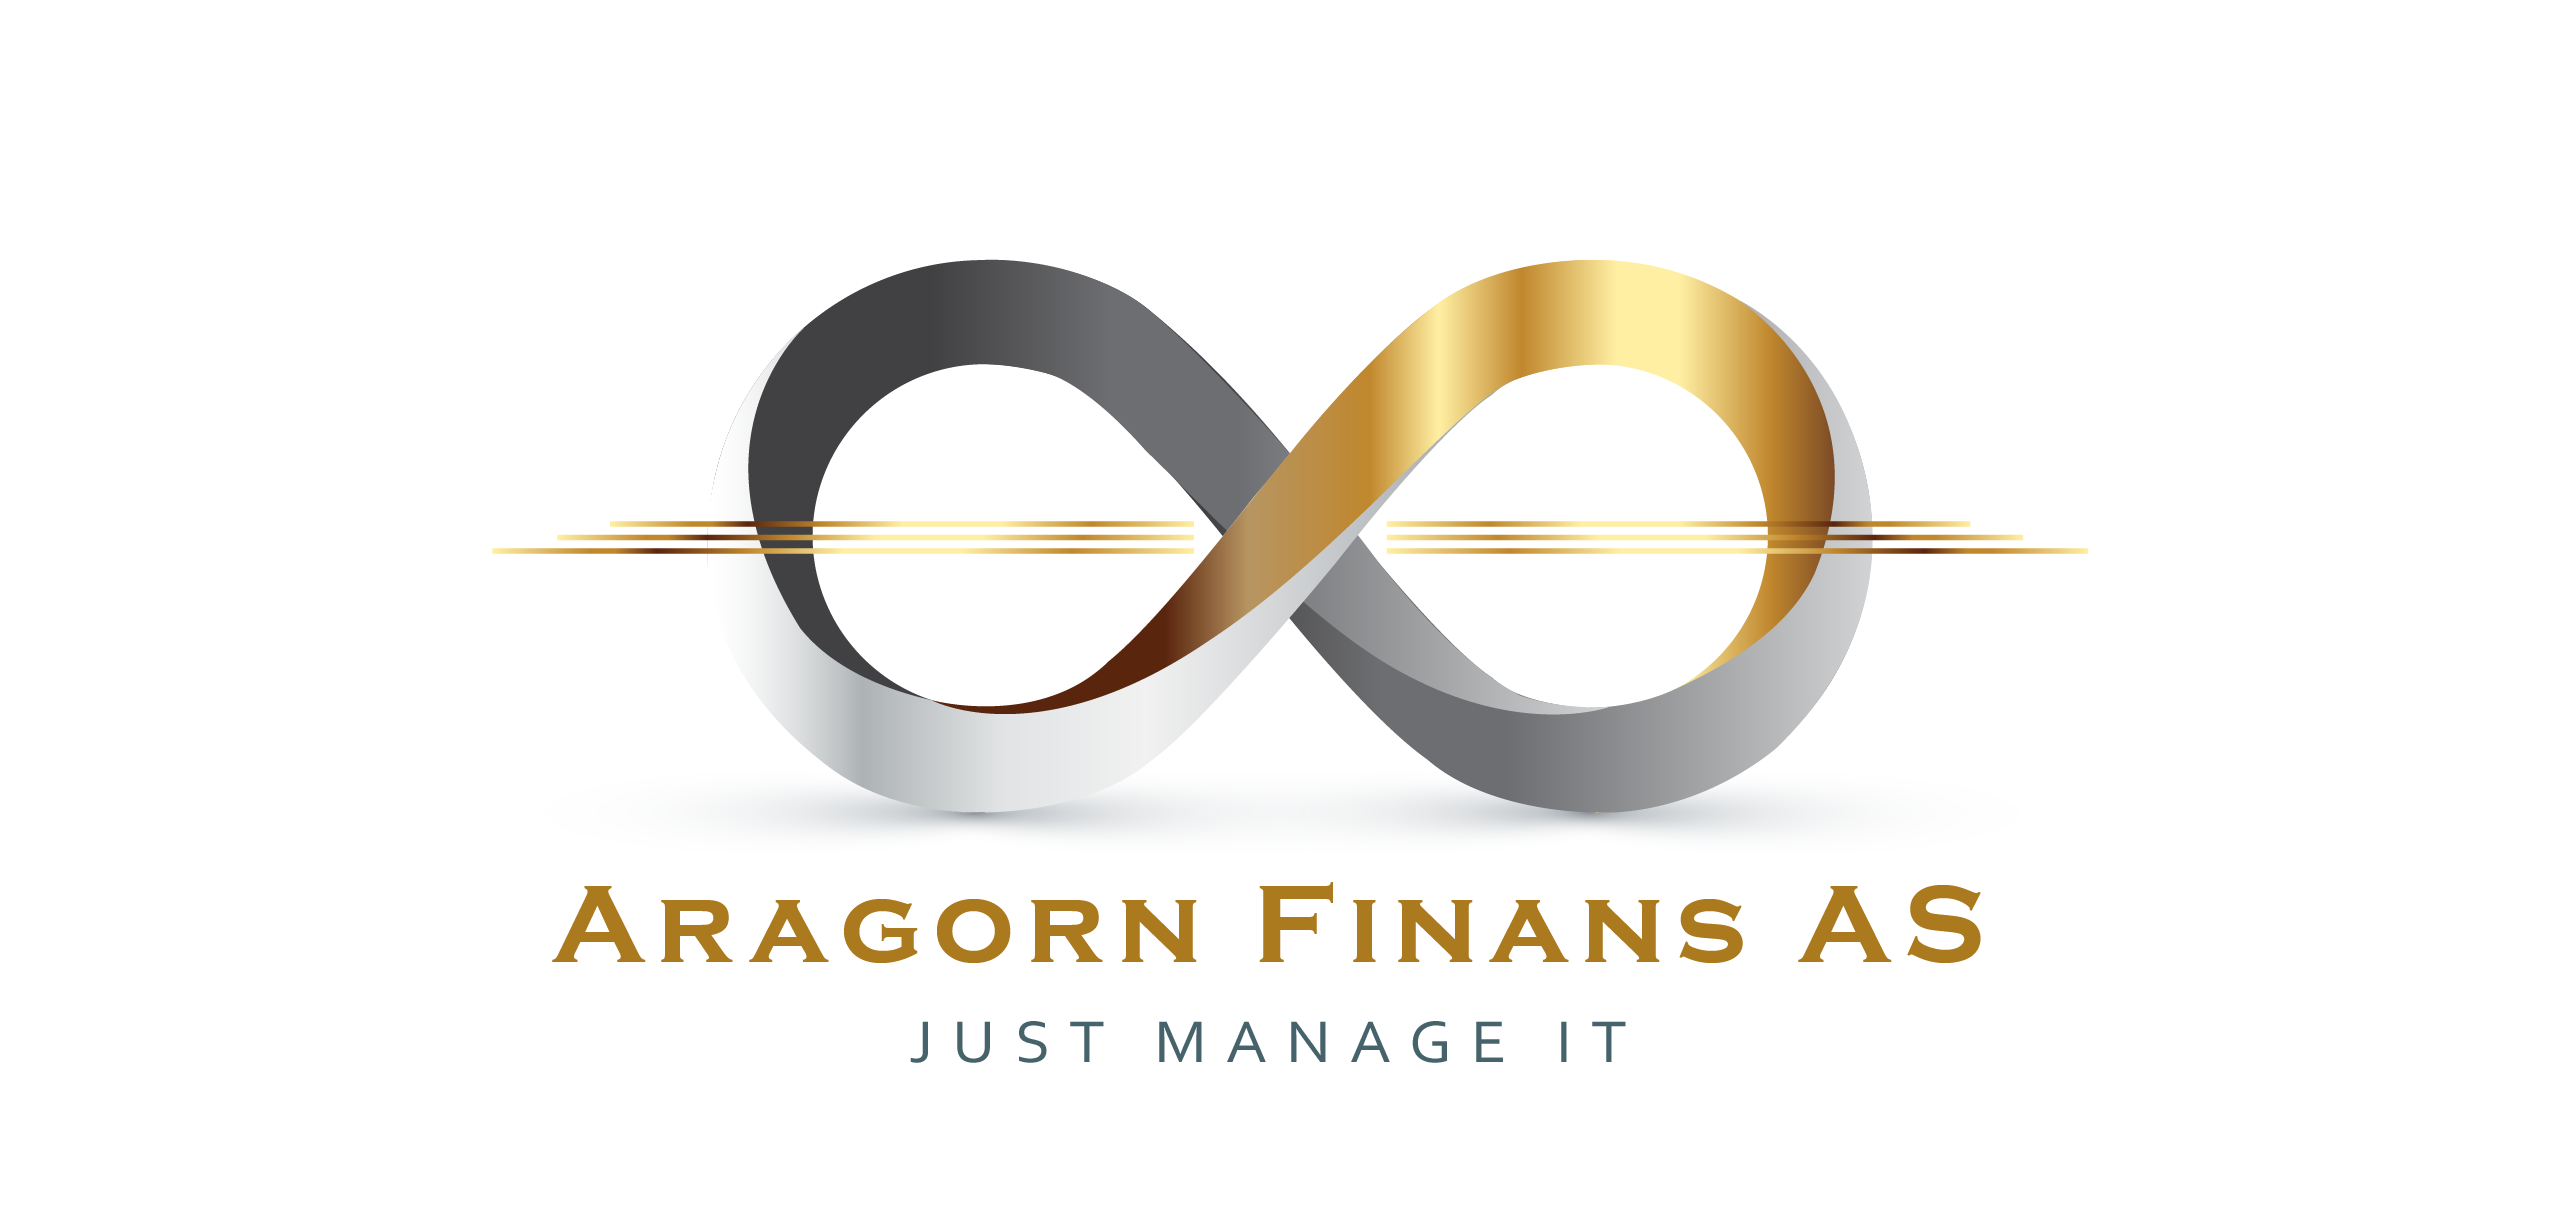 Aragorn Finans